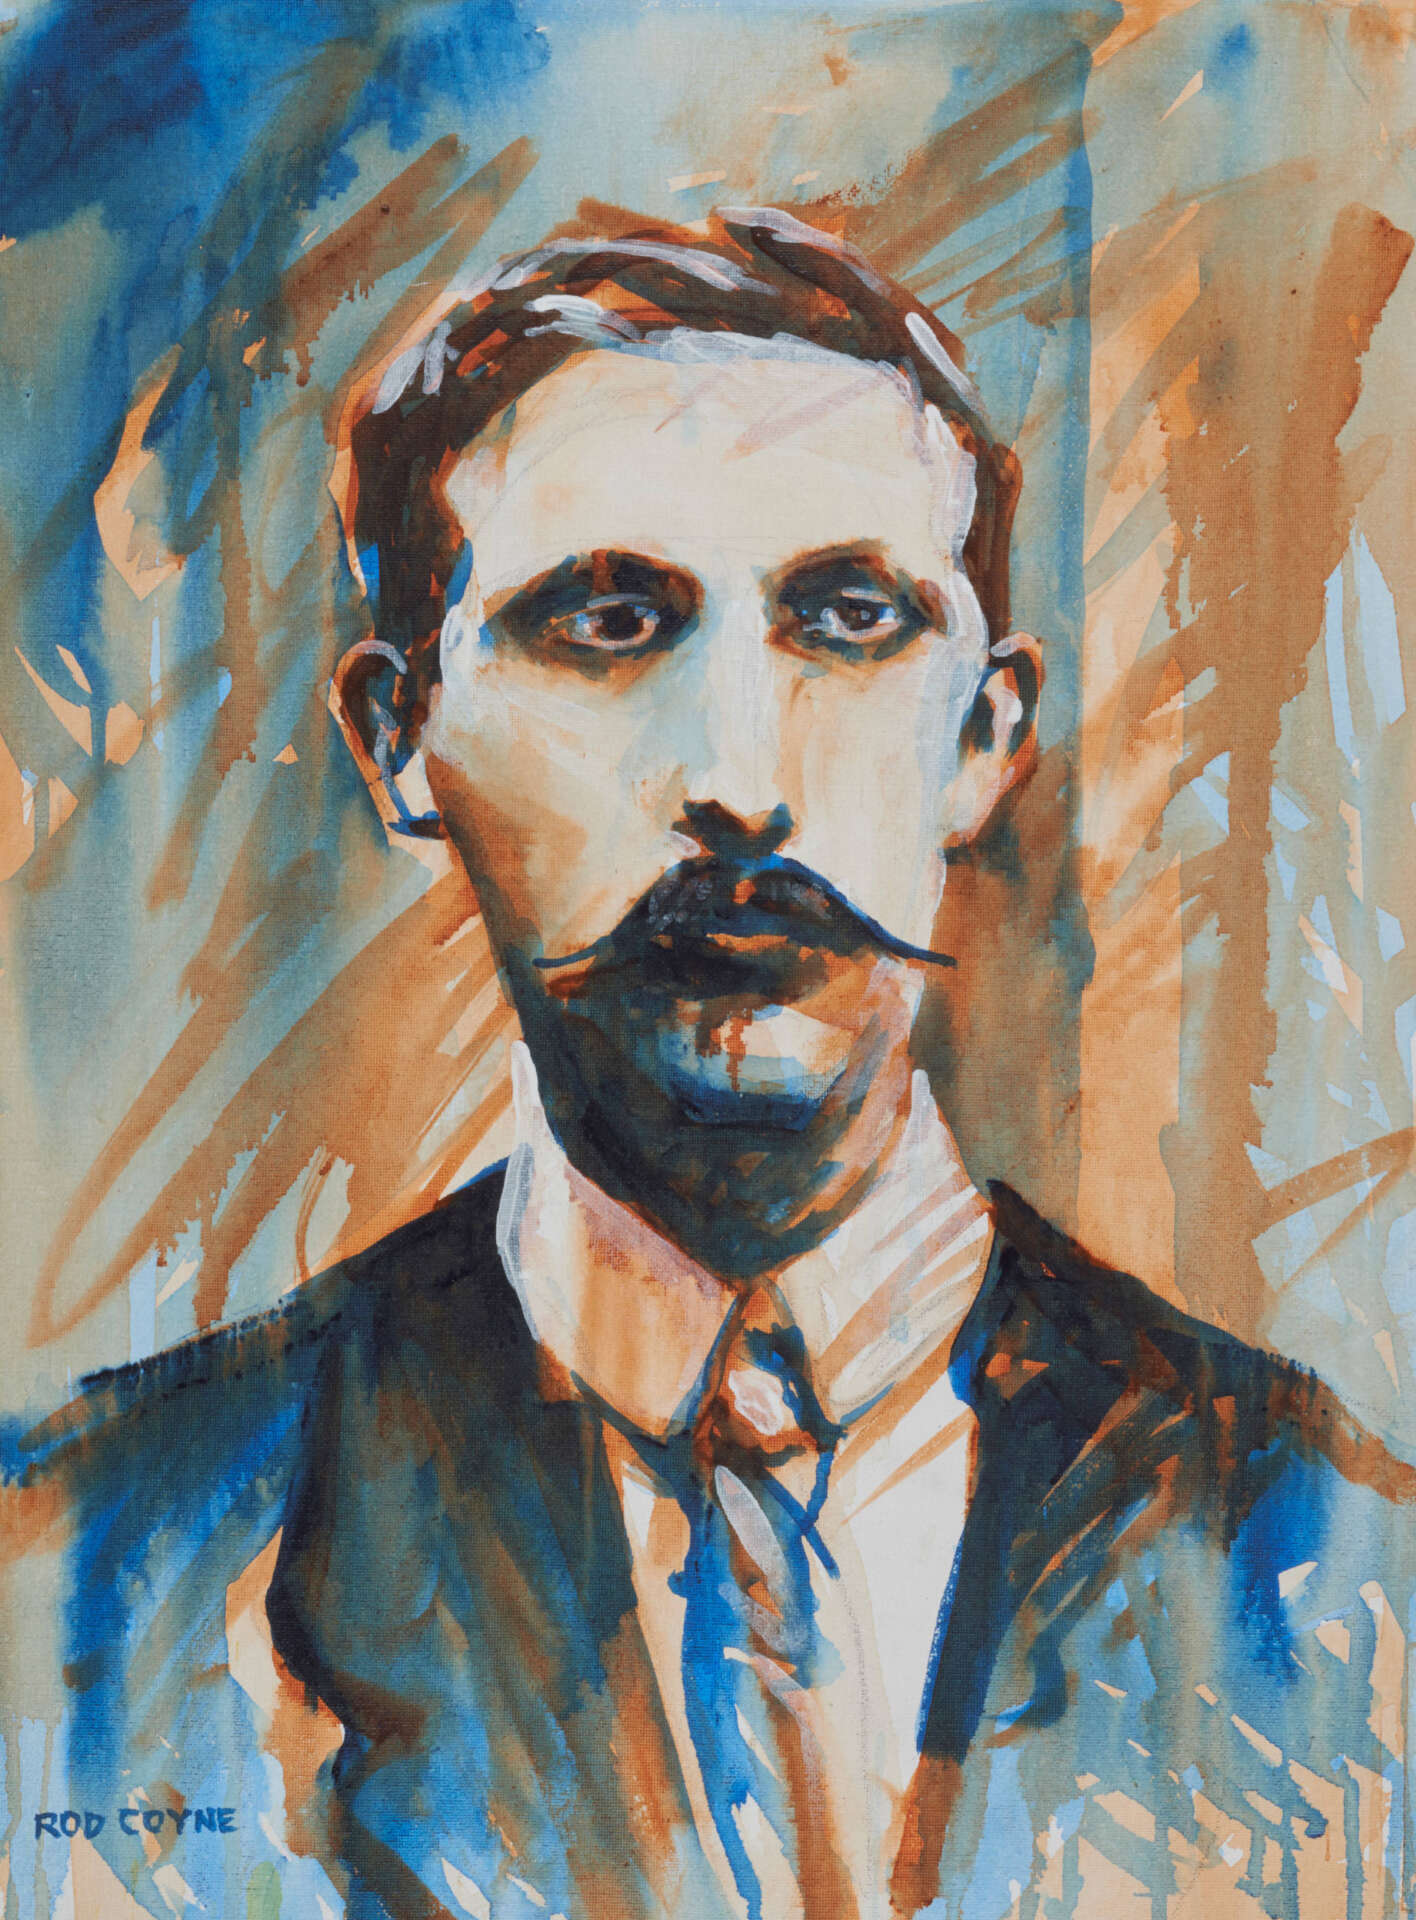 artist rod coyne's portrait "Éamonn Ceannt 1916" is shown here.